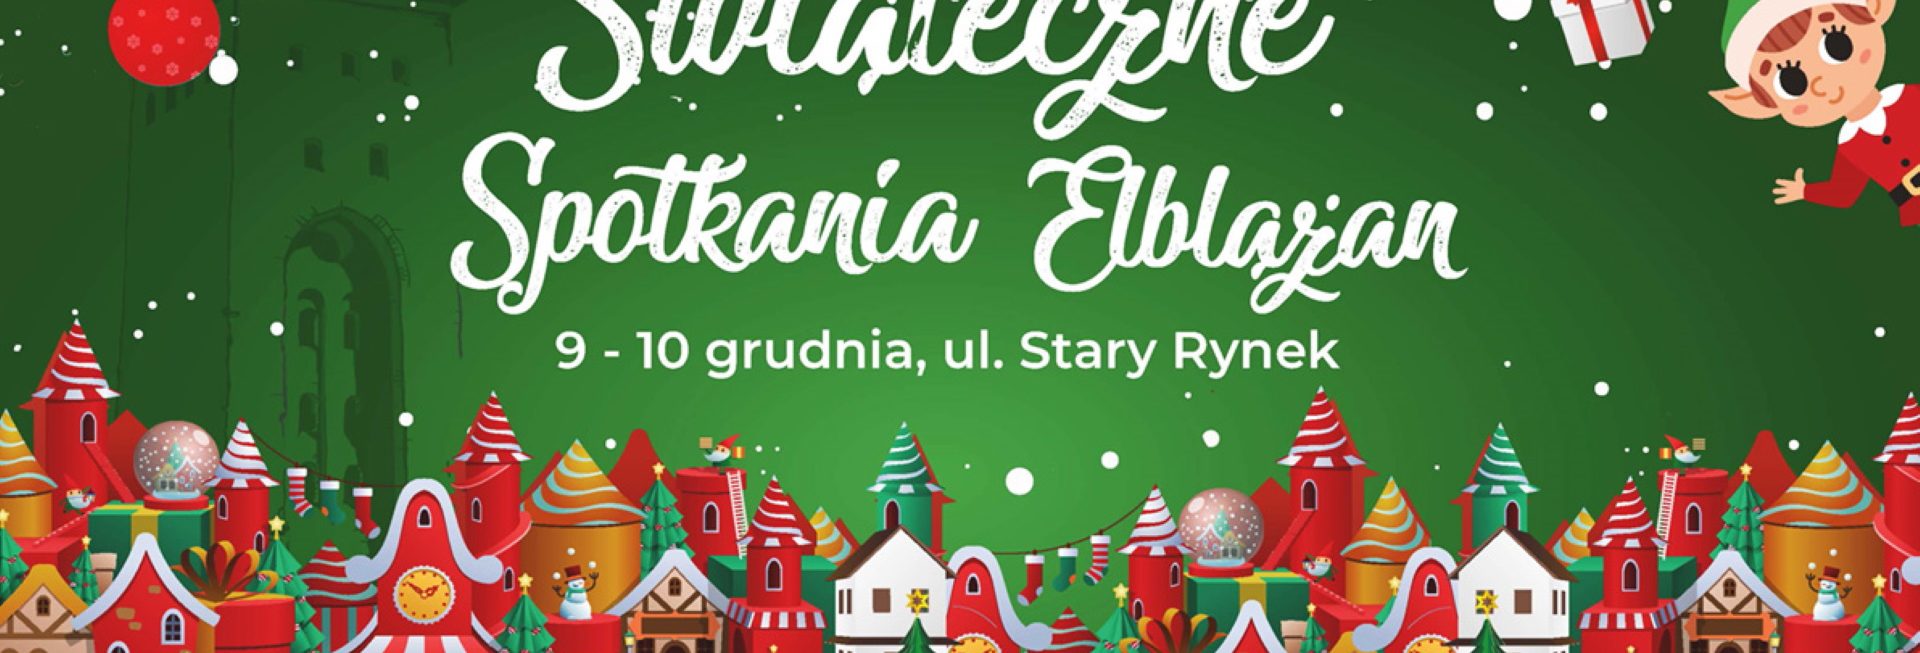 Plakat zapraszający w dniach 9-10 grudnia 2023 r. do Elbląga na Świąteczne Spotkania Elblążan Elbląg 2023.